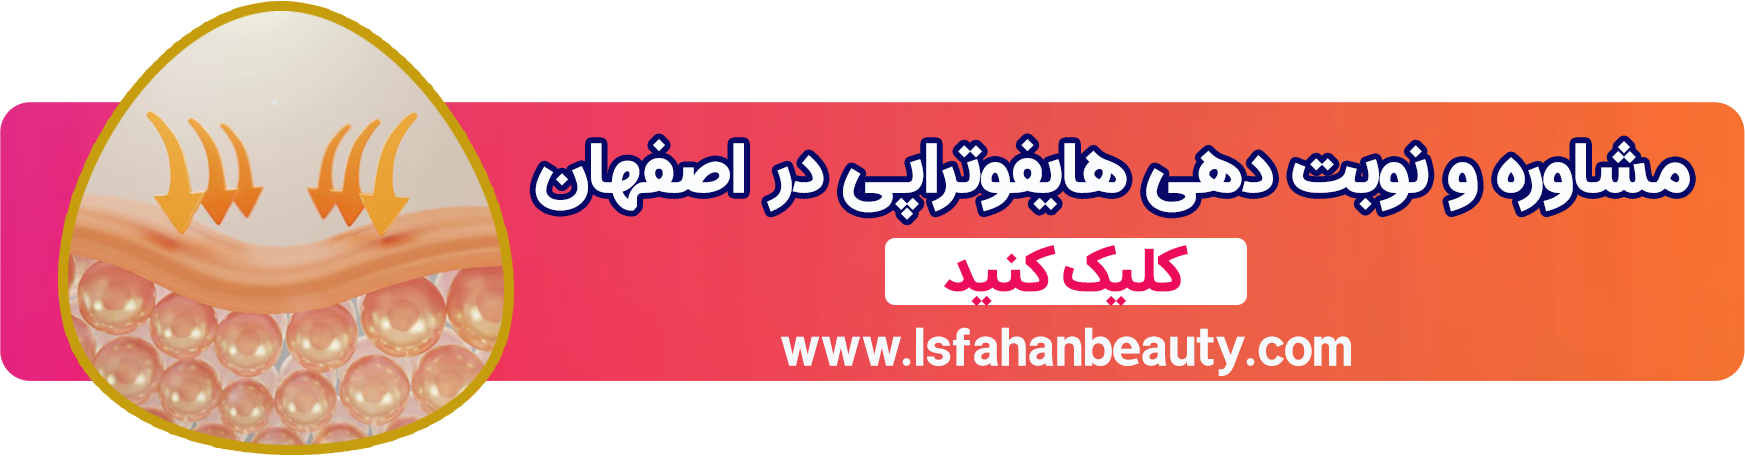 هایفوتراپی در اصفهان| اصفهان بیوتی